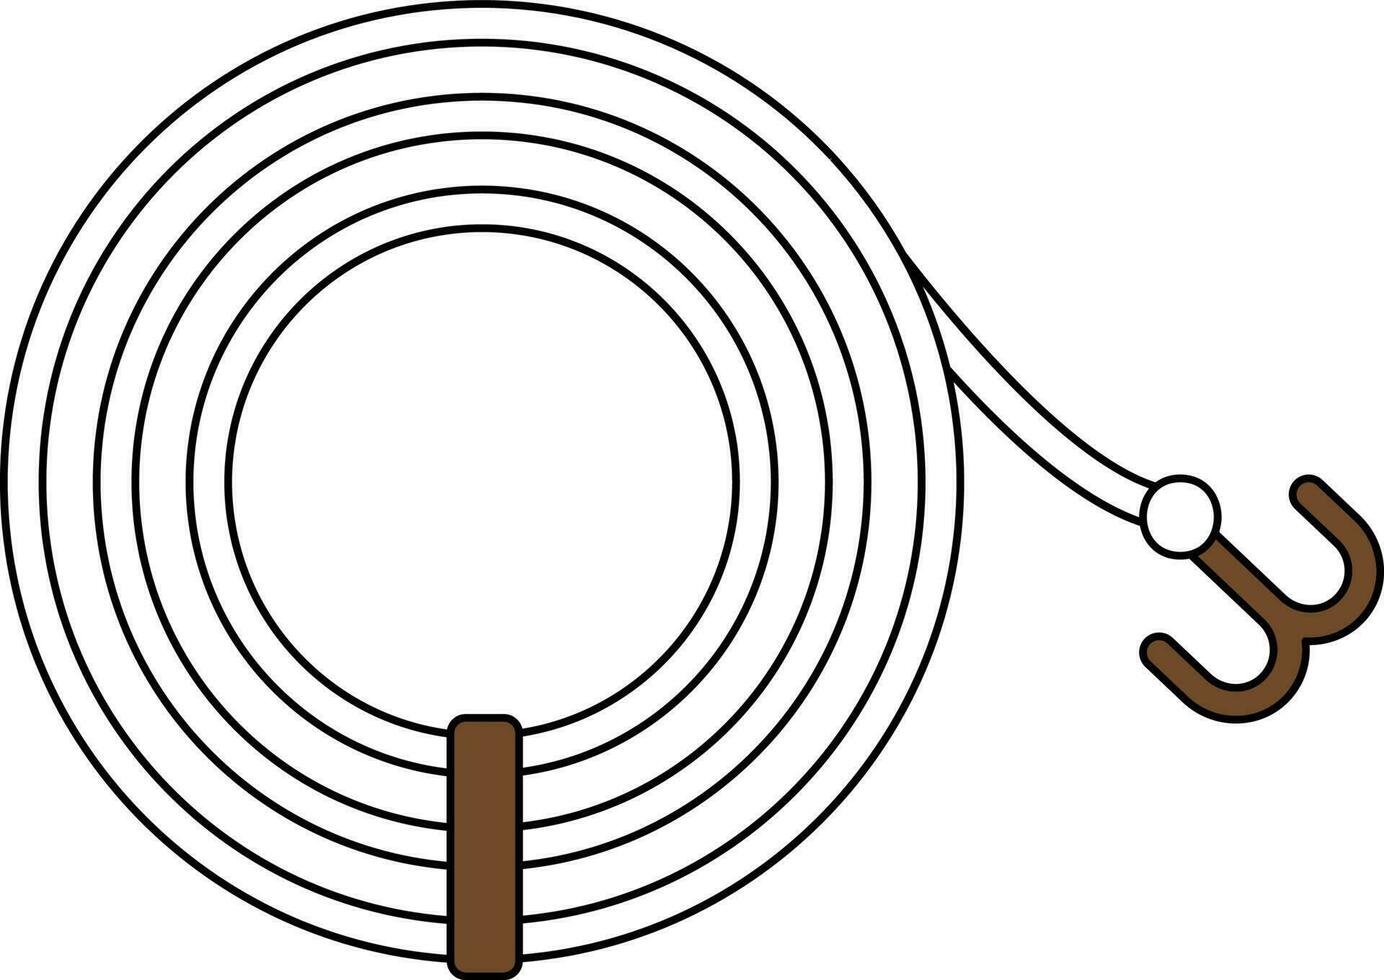 krok rep ikon i vit och brun Färg. vektor